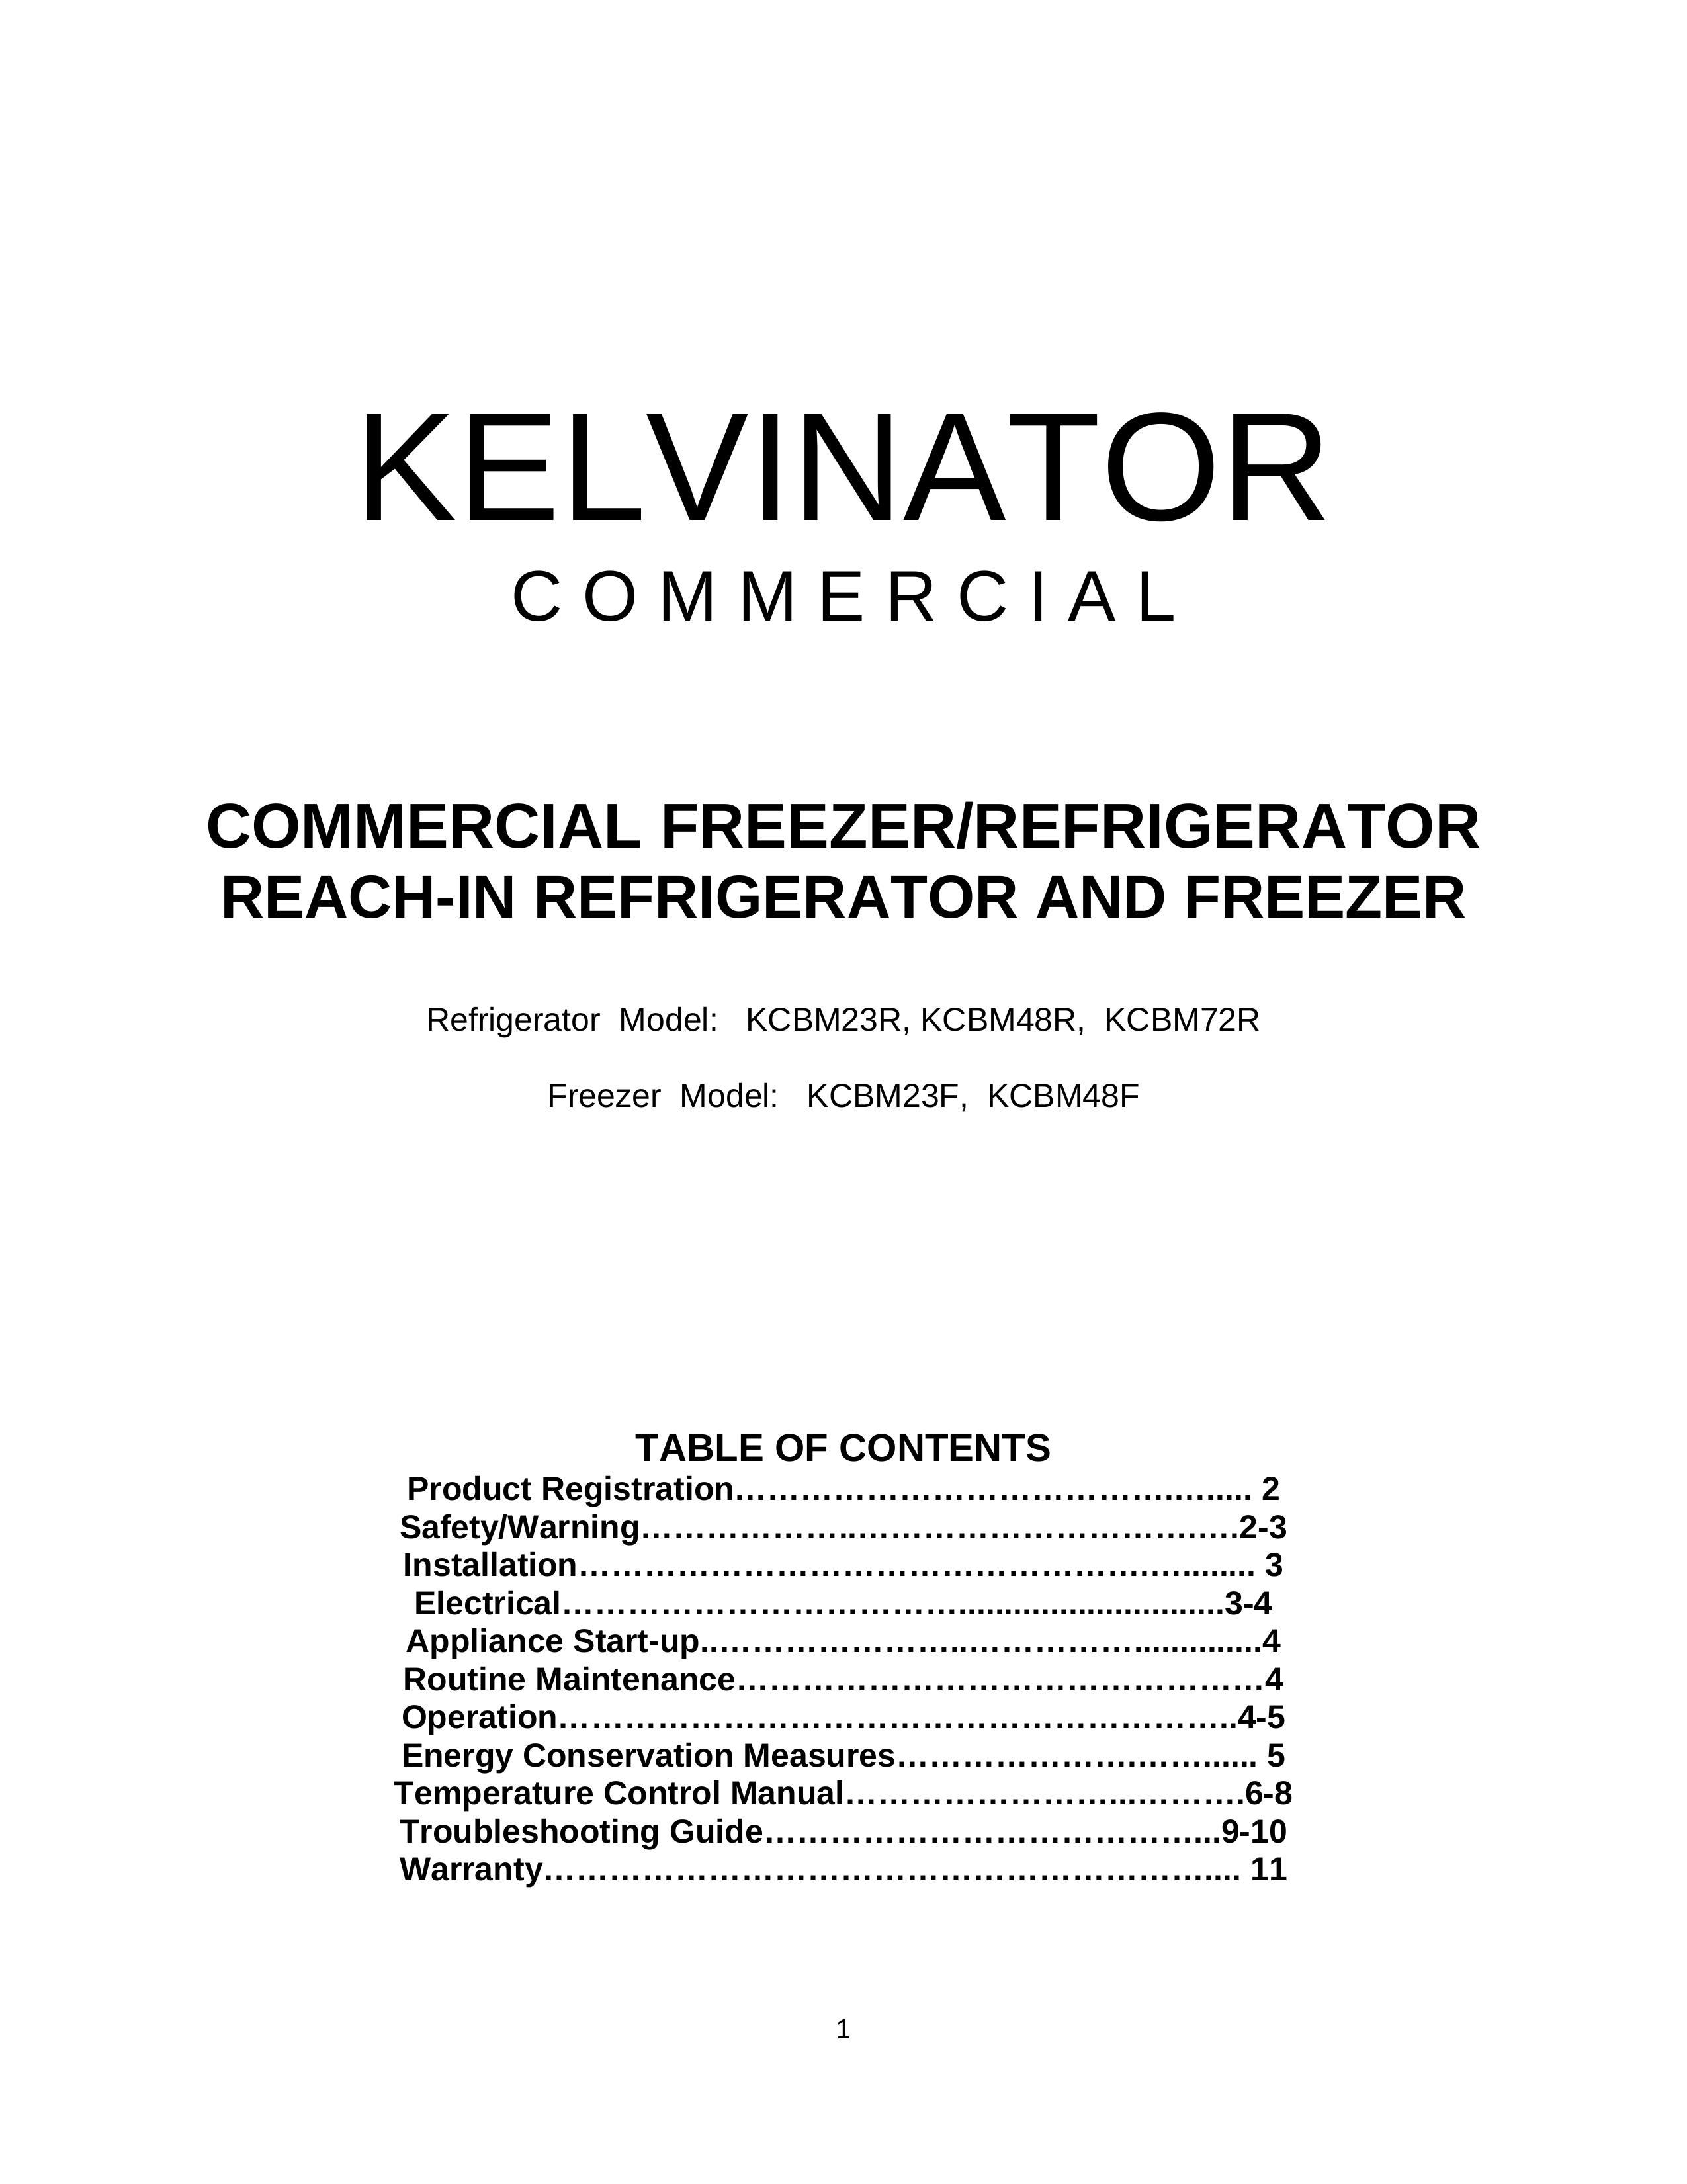 Kelvinator KCBM48F Refrigerator User Manual